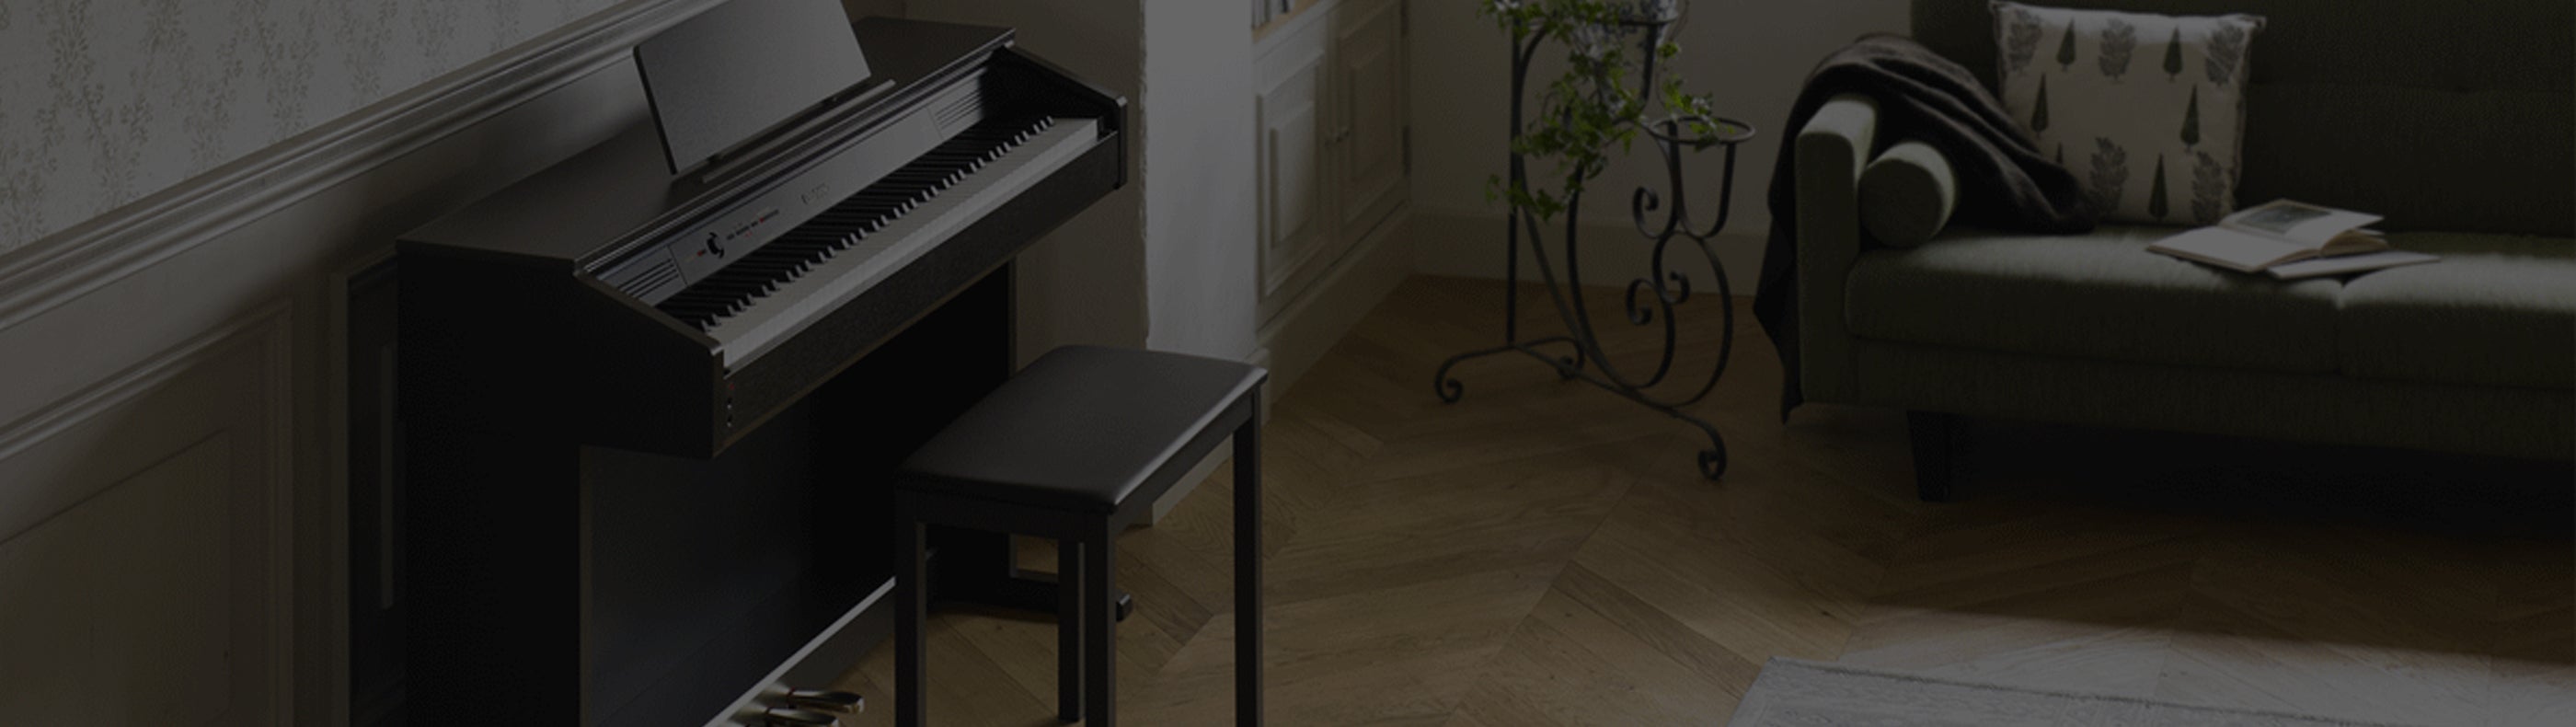 Celviano Digital Pianos